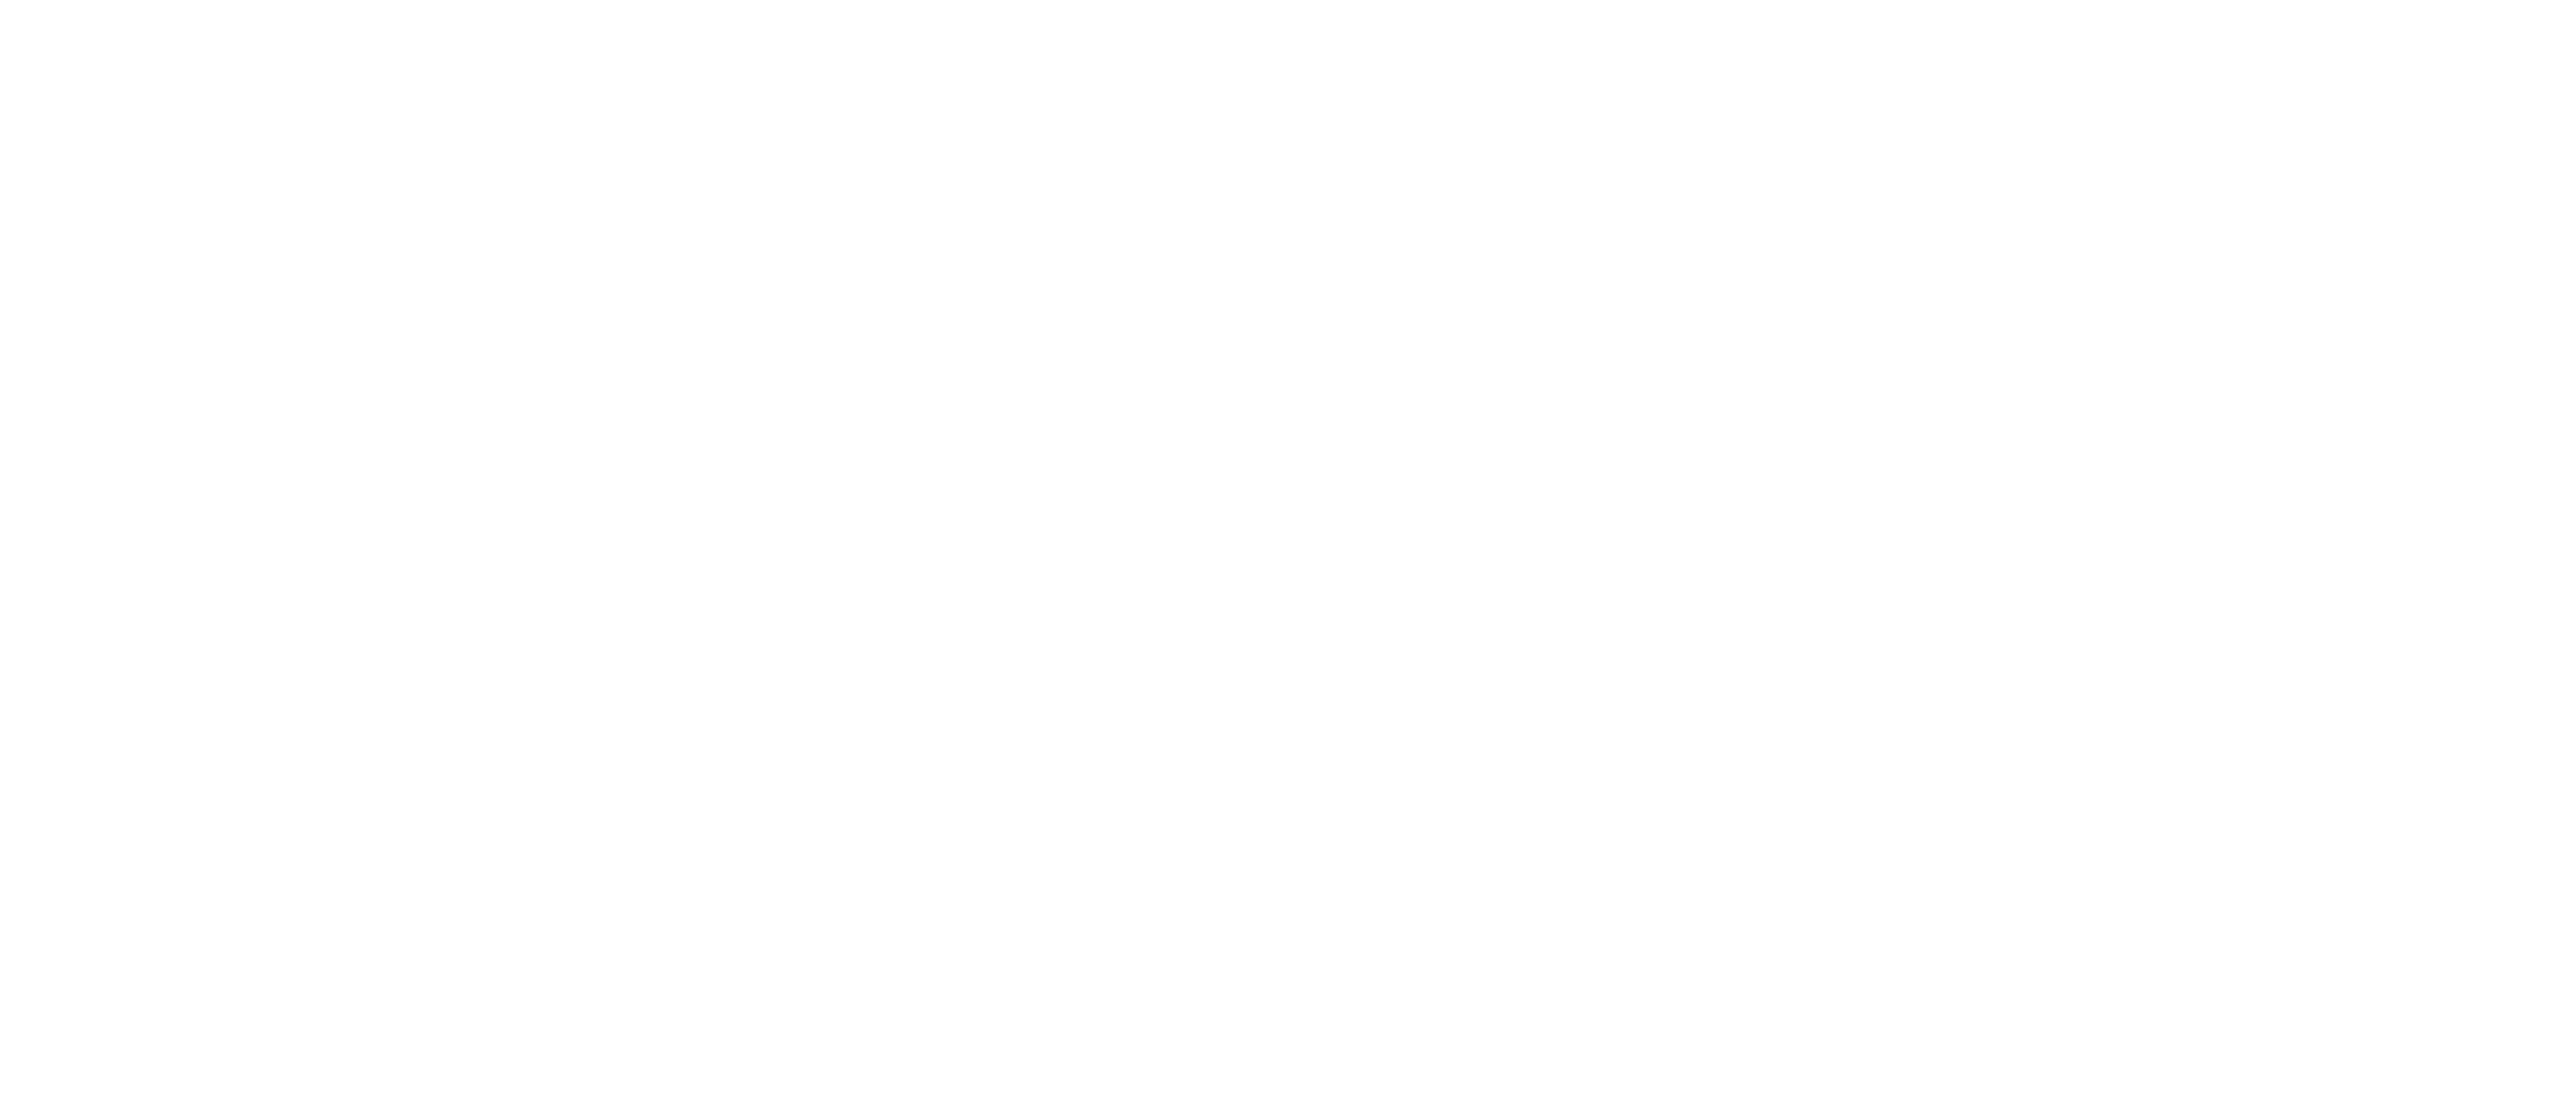 Trimbow_Chiesi_Astma_Keuhkoahtaumatauti_logo